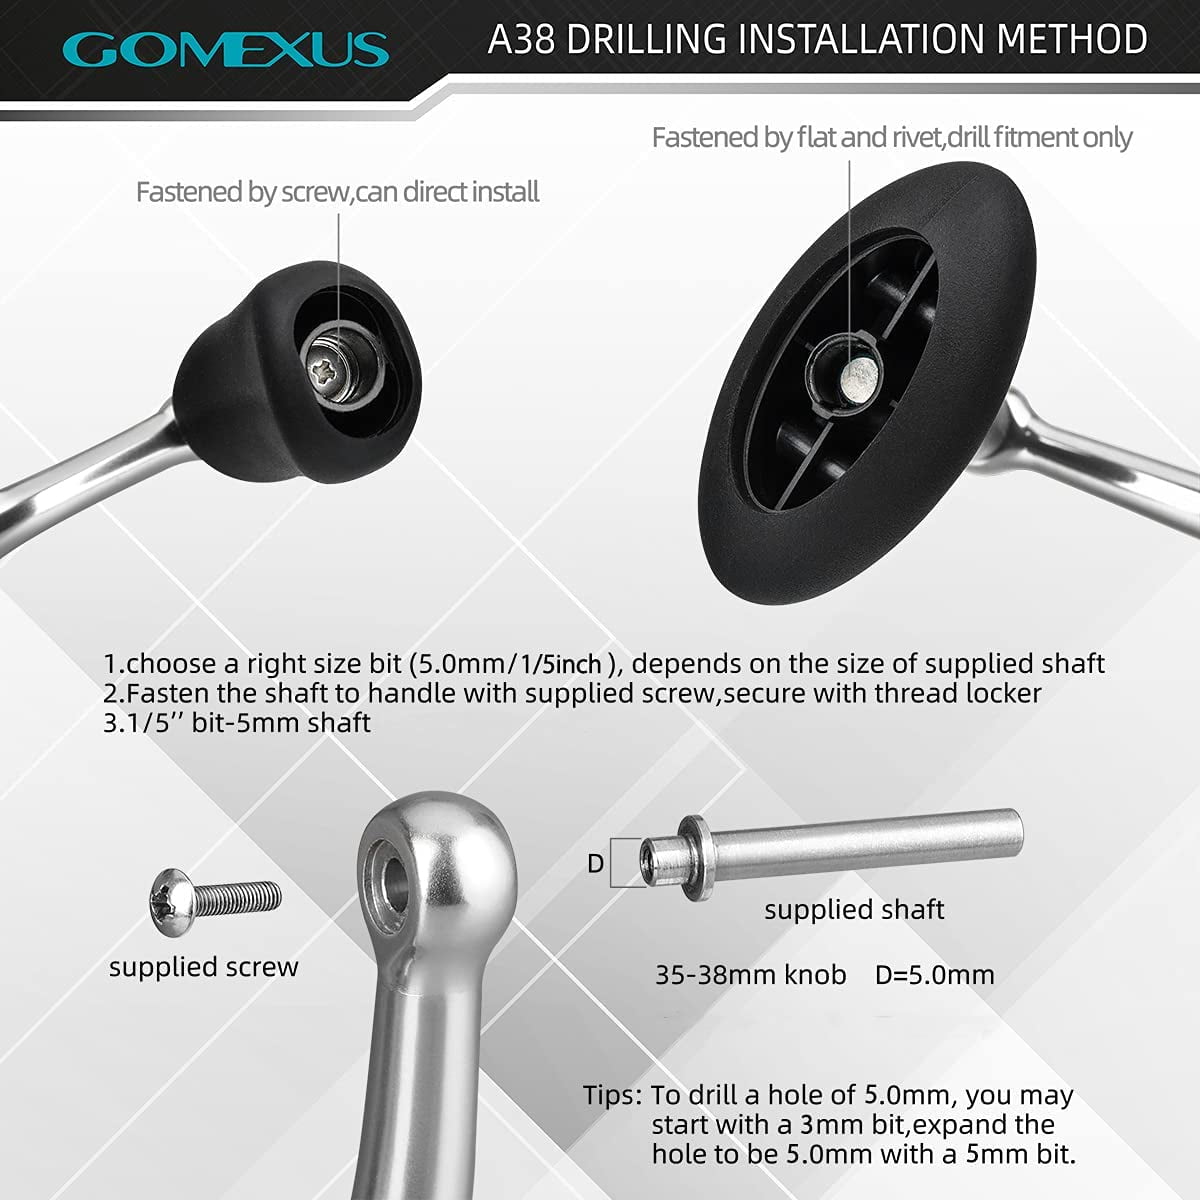  Gomexus CY82 Reel Handle, Shimano Spinning Reel